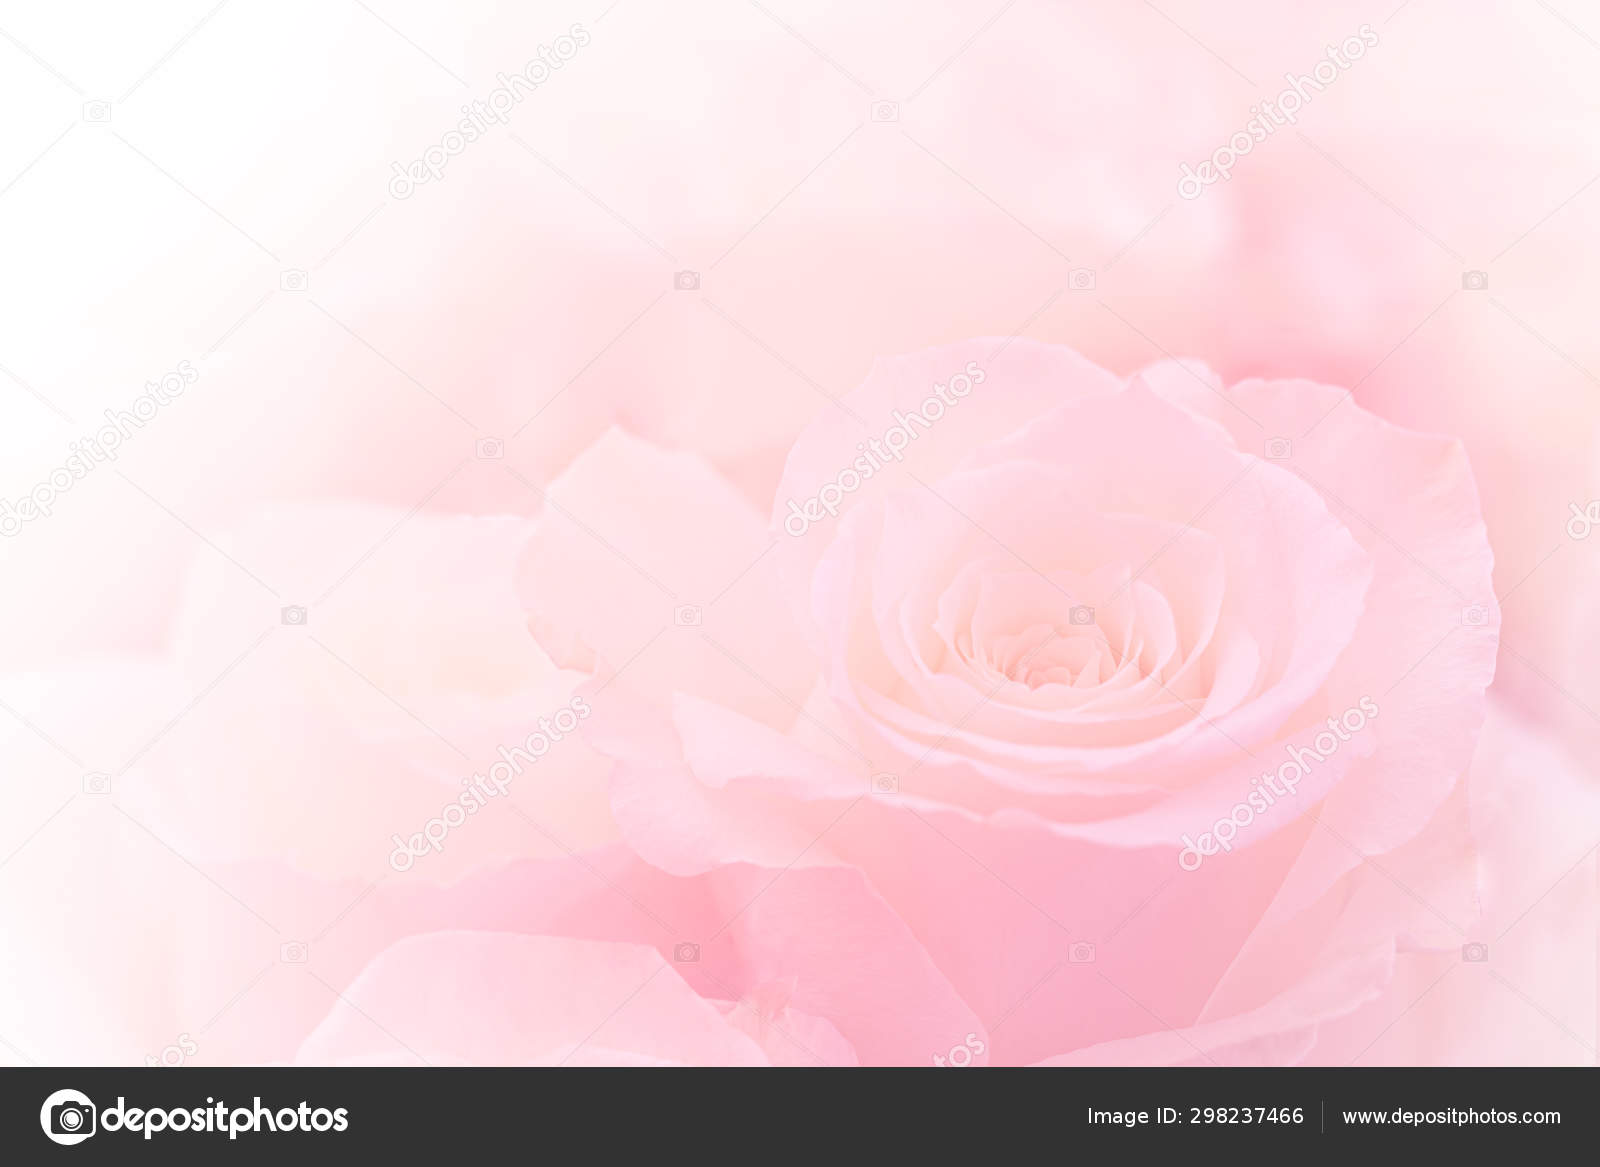 Tưởng tượng về một bó hoa hồng hồng tươi tắn và mượt mà, được đặt trên nền hồng phấn mờ và mềm mại. Điều đó khiến tất cả chúng ta đều phải thèm muốn mang một trái tim lãng mạn và giàu ý nghĩa. Hiệu ứng màu nước thêm độ tươi mới cho tranh ảnh nghệ thuật đầy cảm hứng.